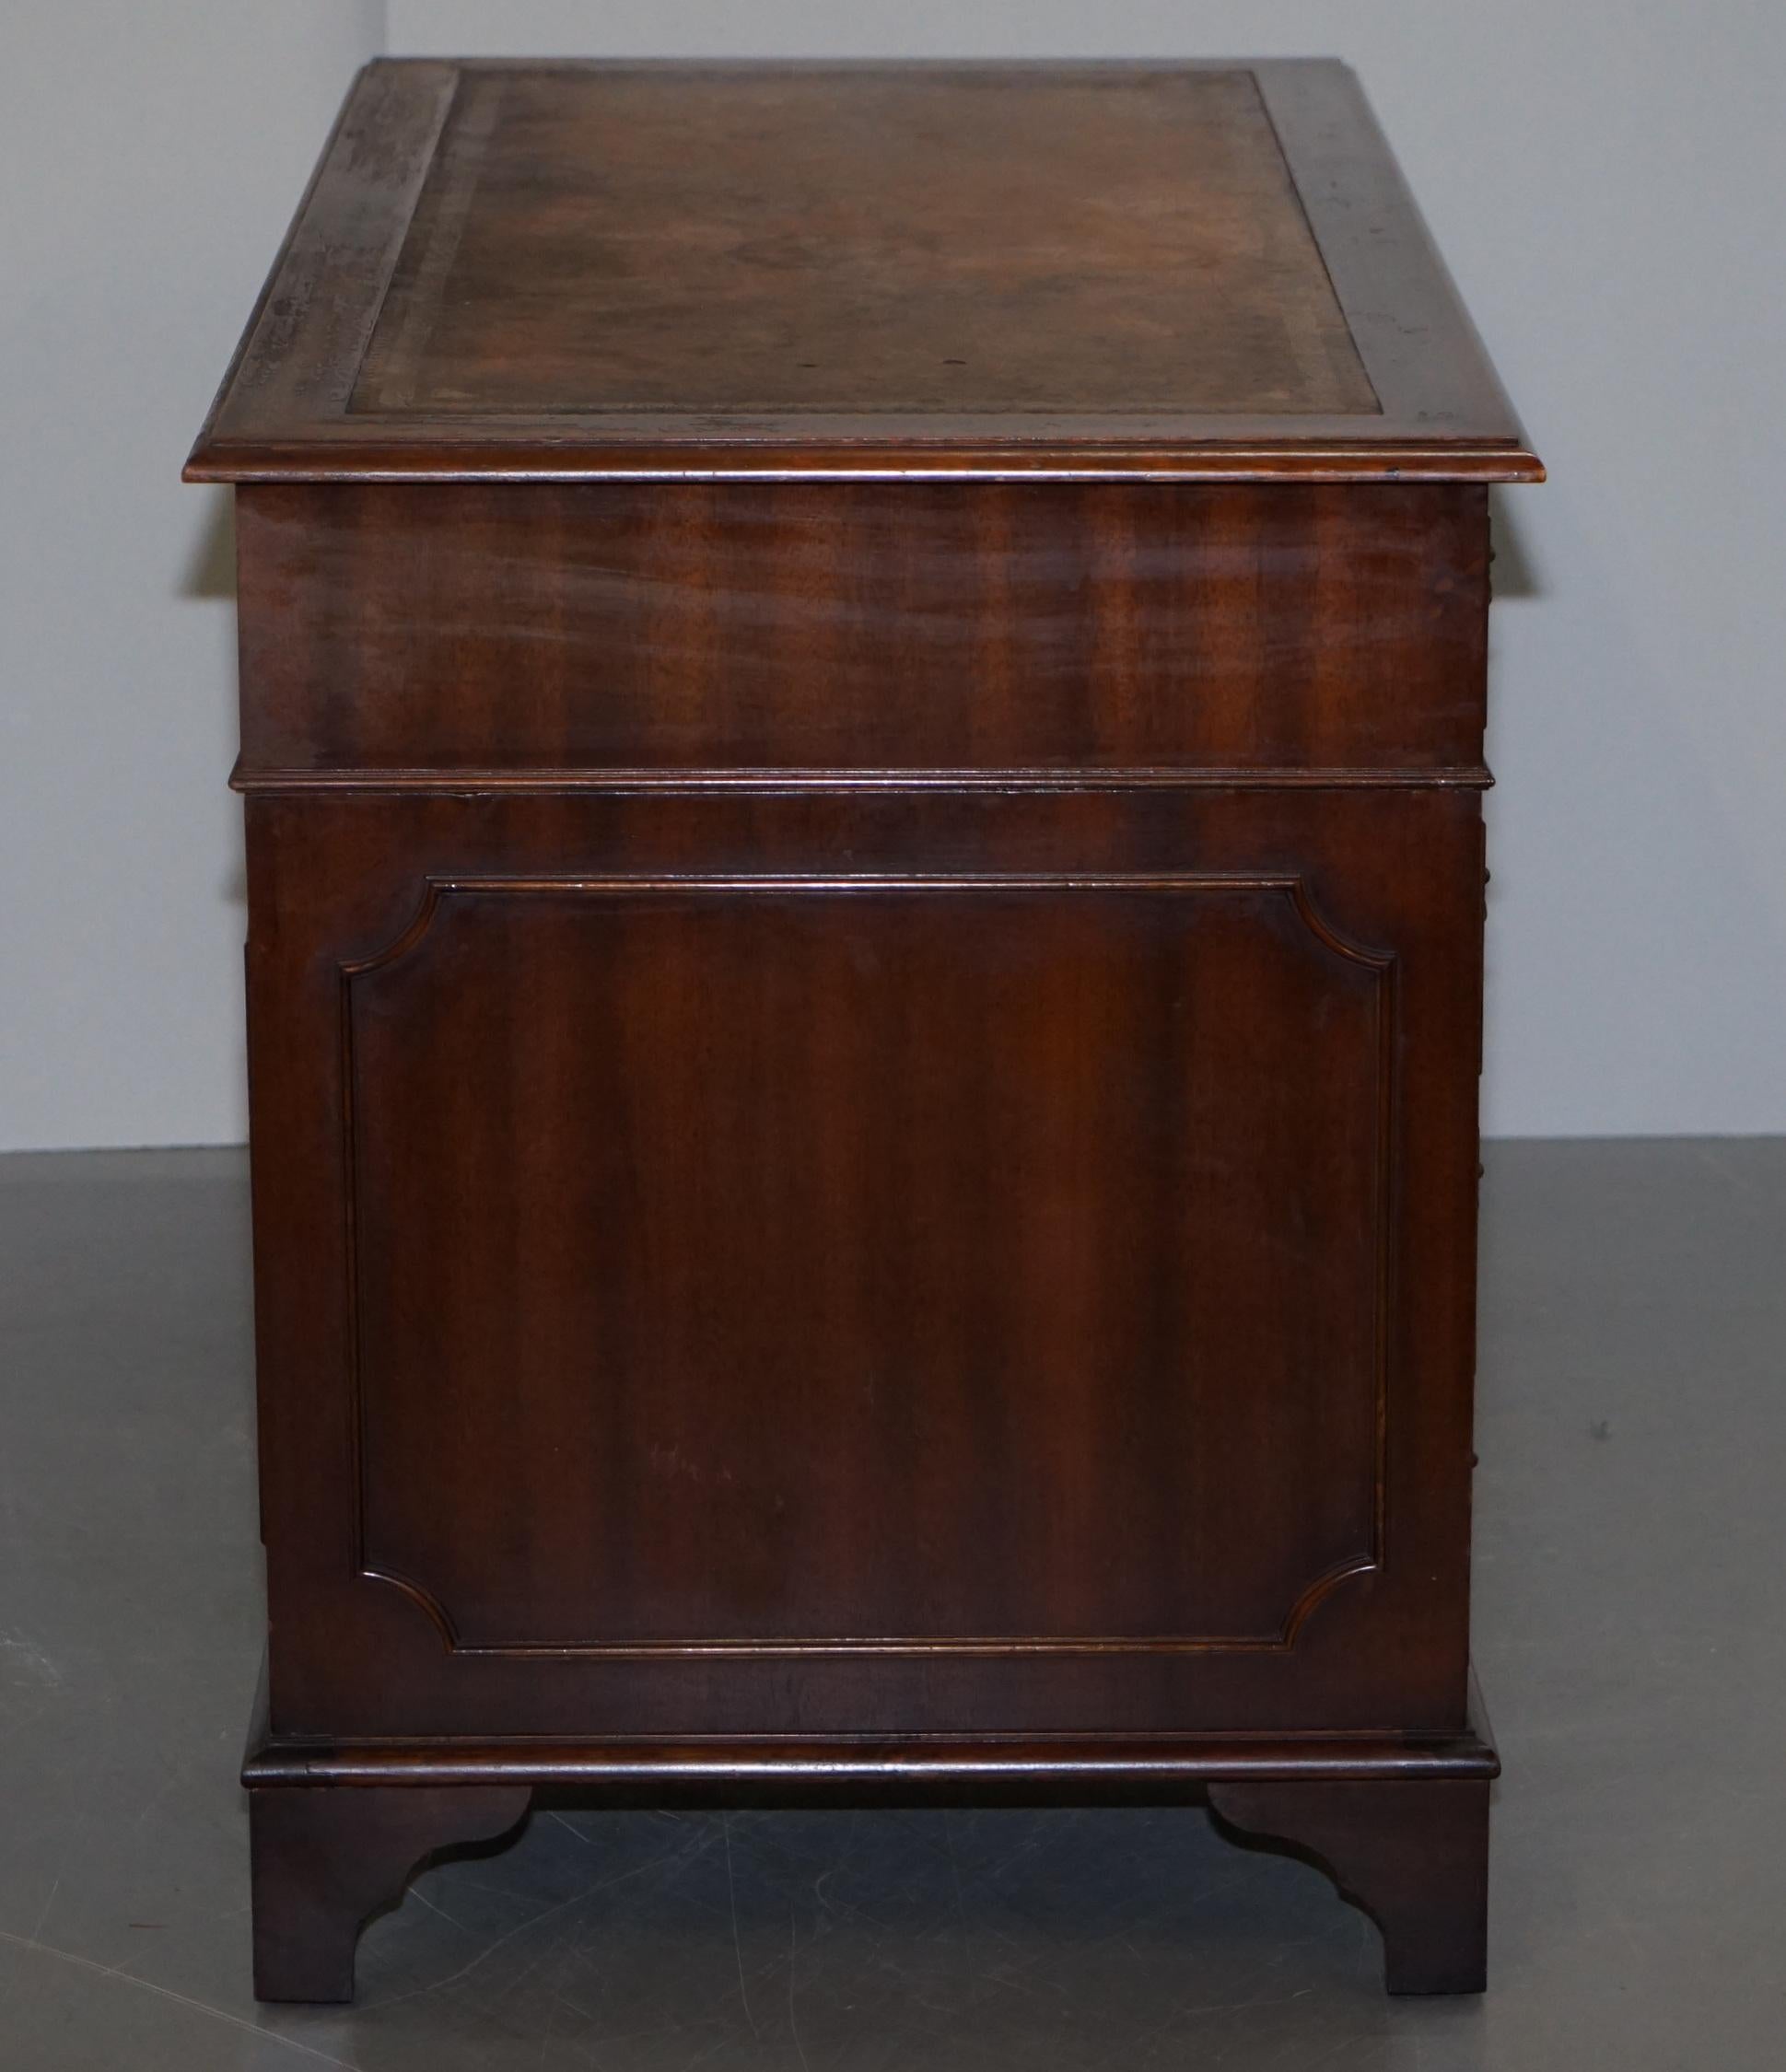 Vintage Hardwood Twin Pedestal Partner Desk With Distressed Brown Leather Top 12